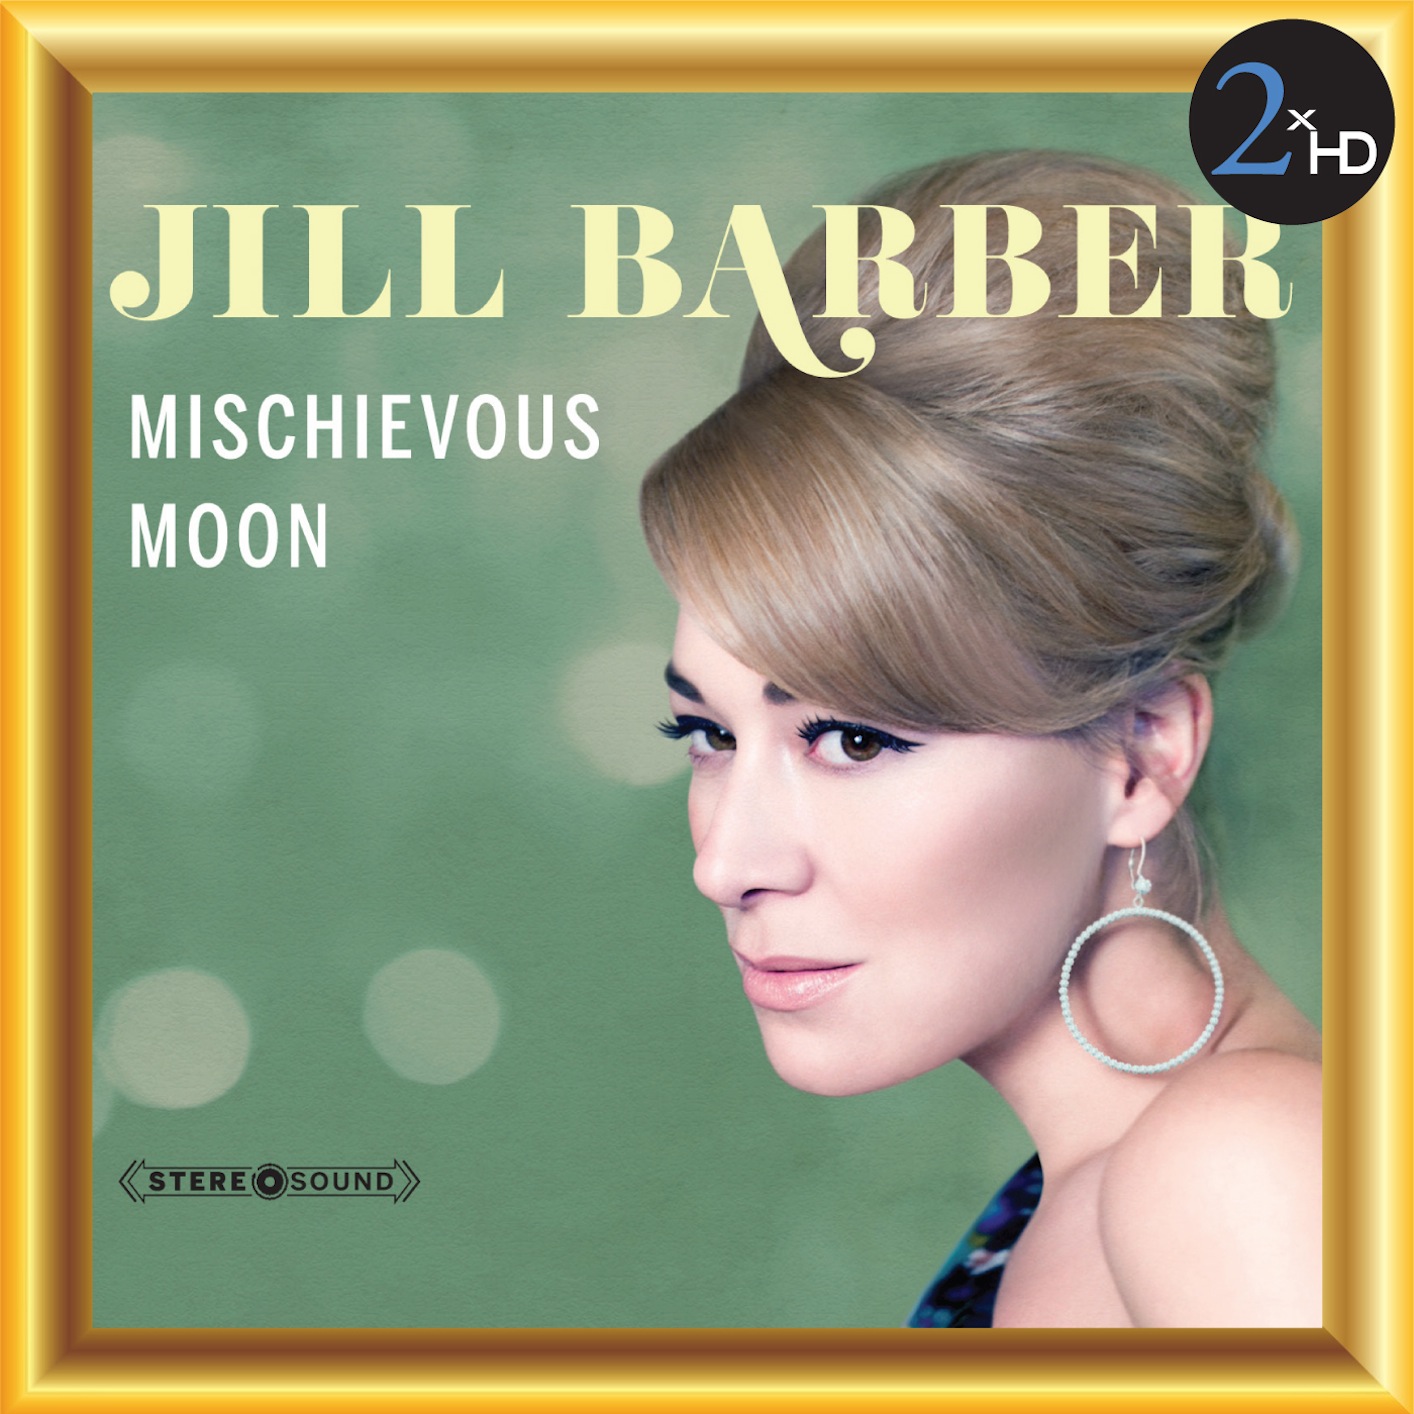 Jill Barber – Mischievous Moon (2013) [FLAC 24bit/48kHz]